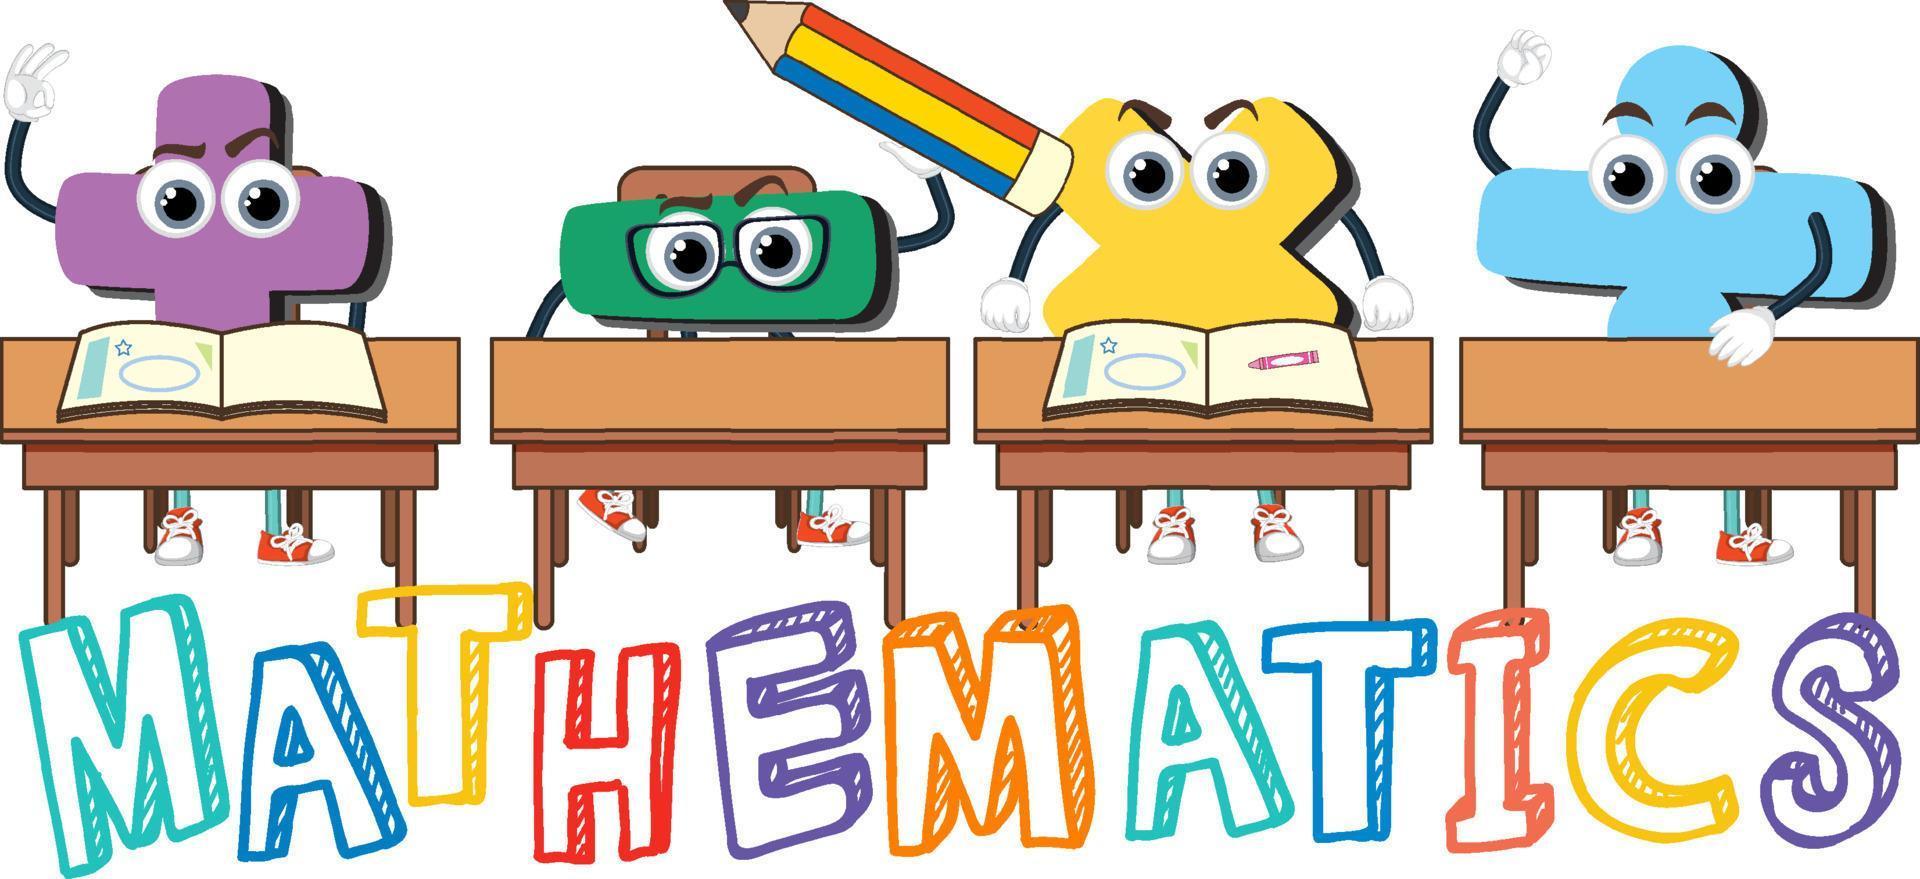 logotipo da palavra matemática em estilo cartoon vetor